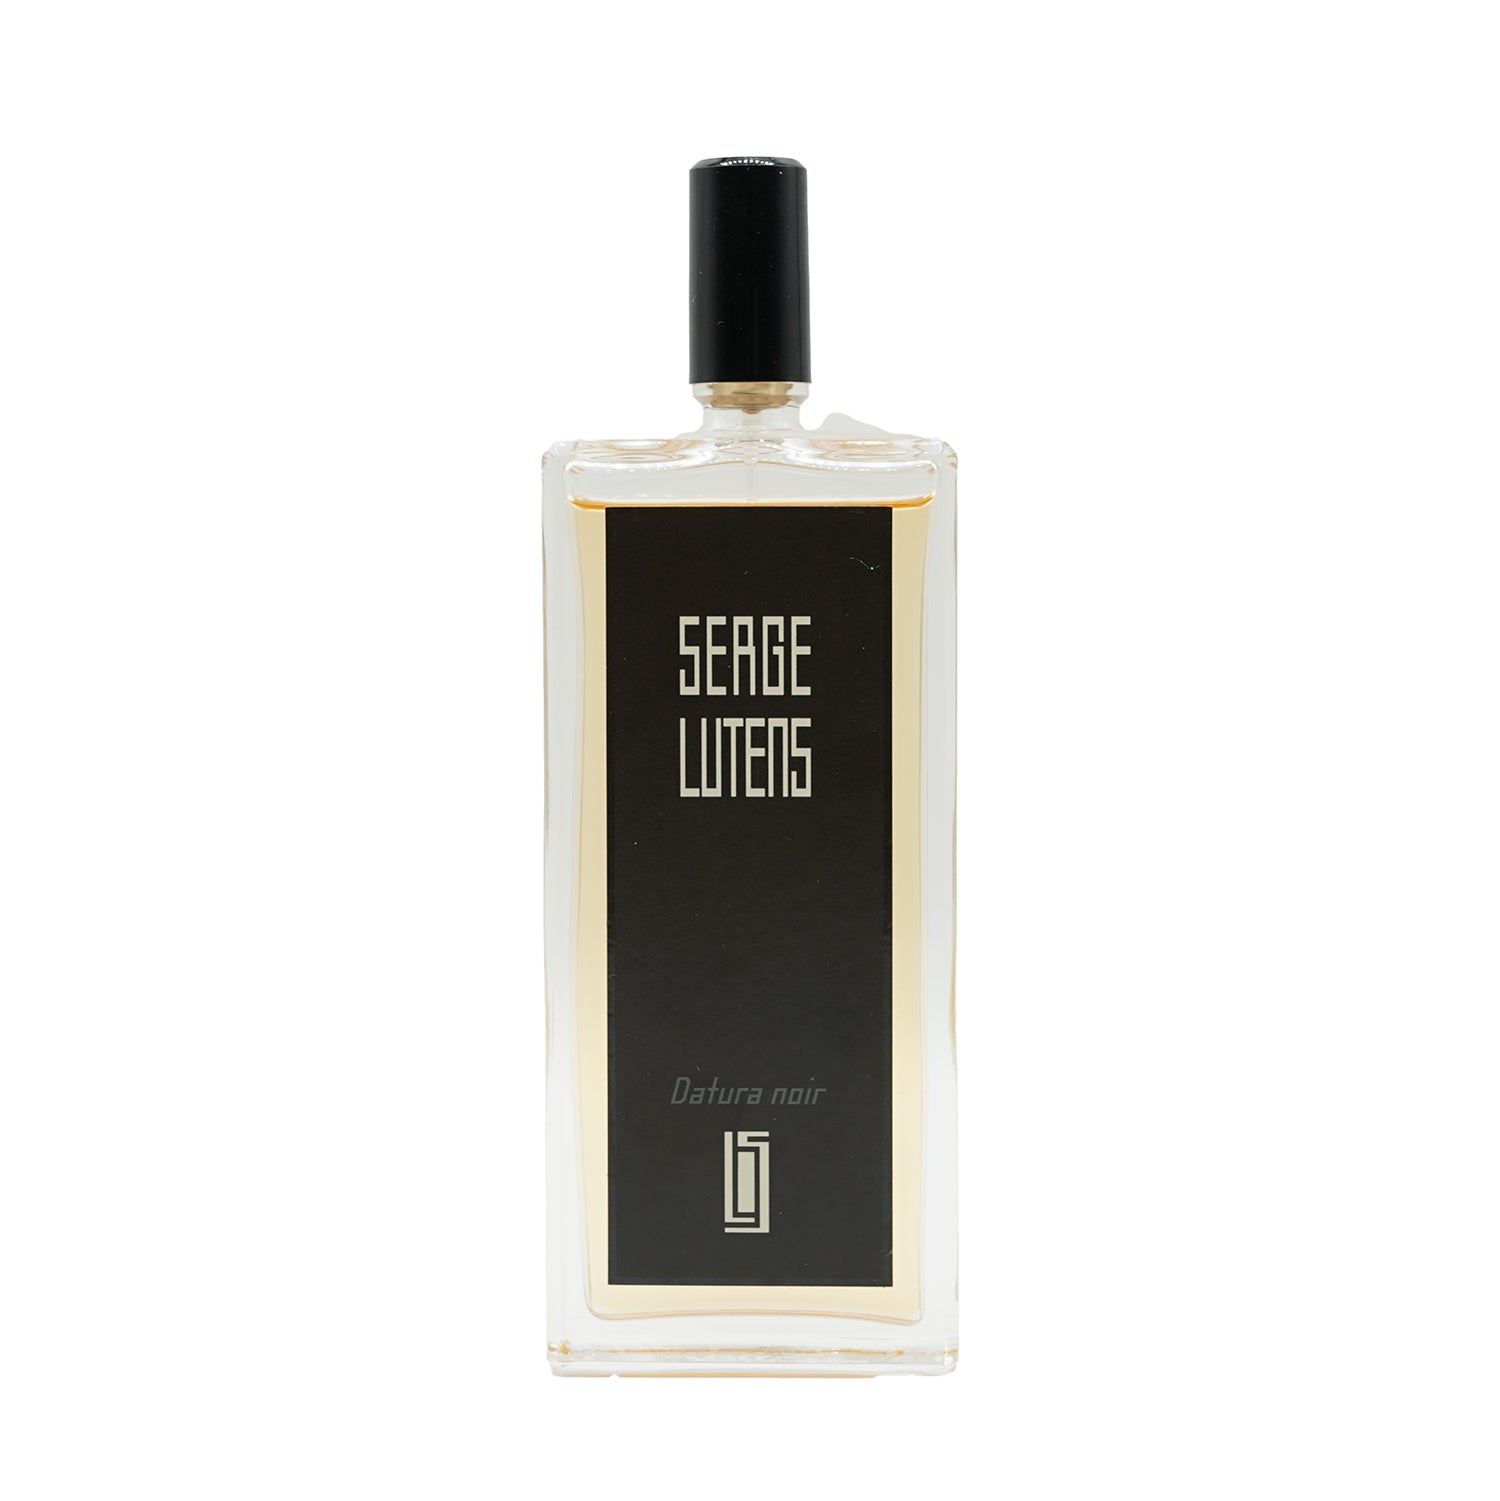 Serge Lutens | Datura noir bottling 